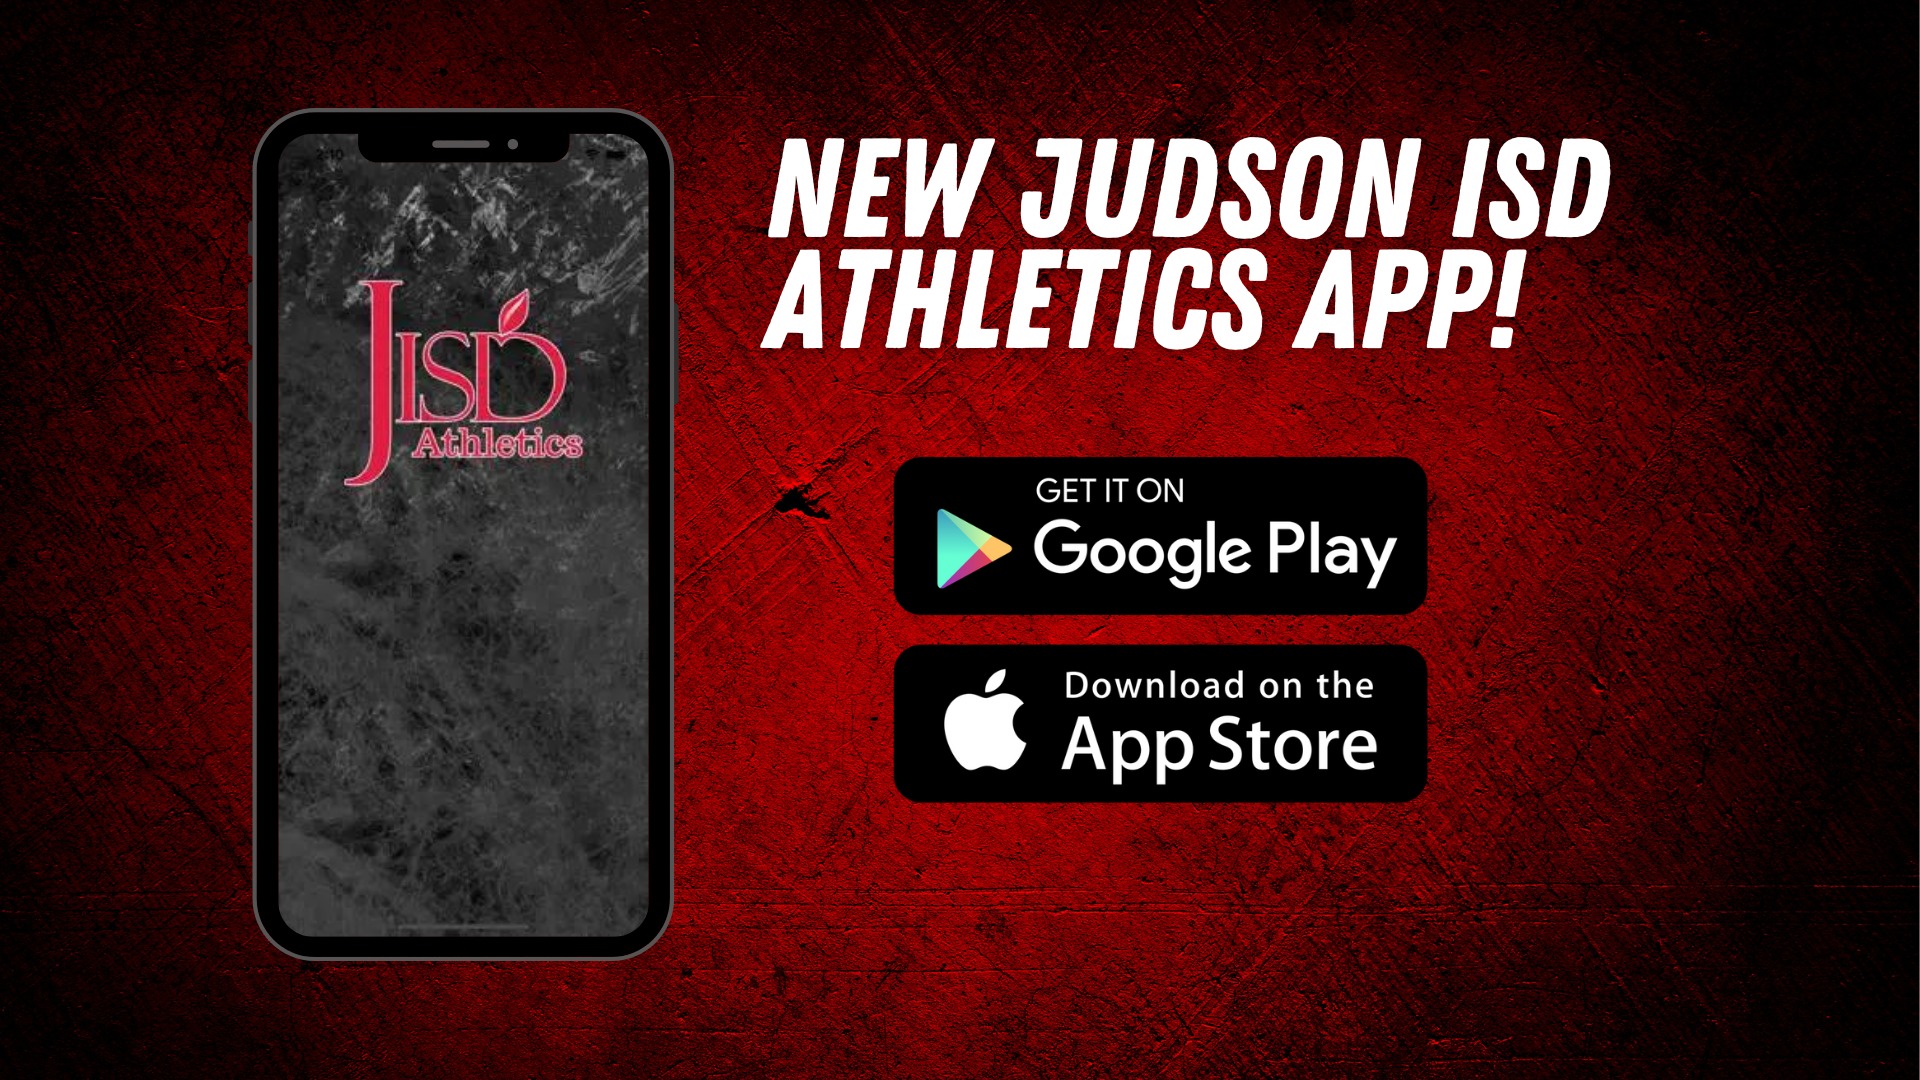 Veterans Memorial HSSlide 4 - Judson ISD Athletics releases new app